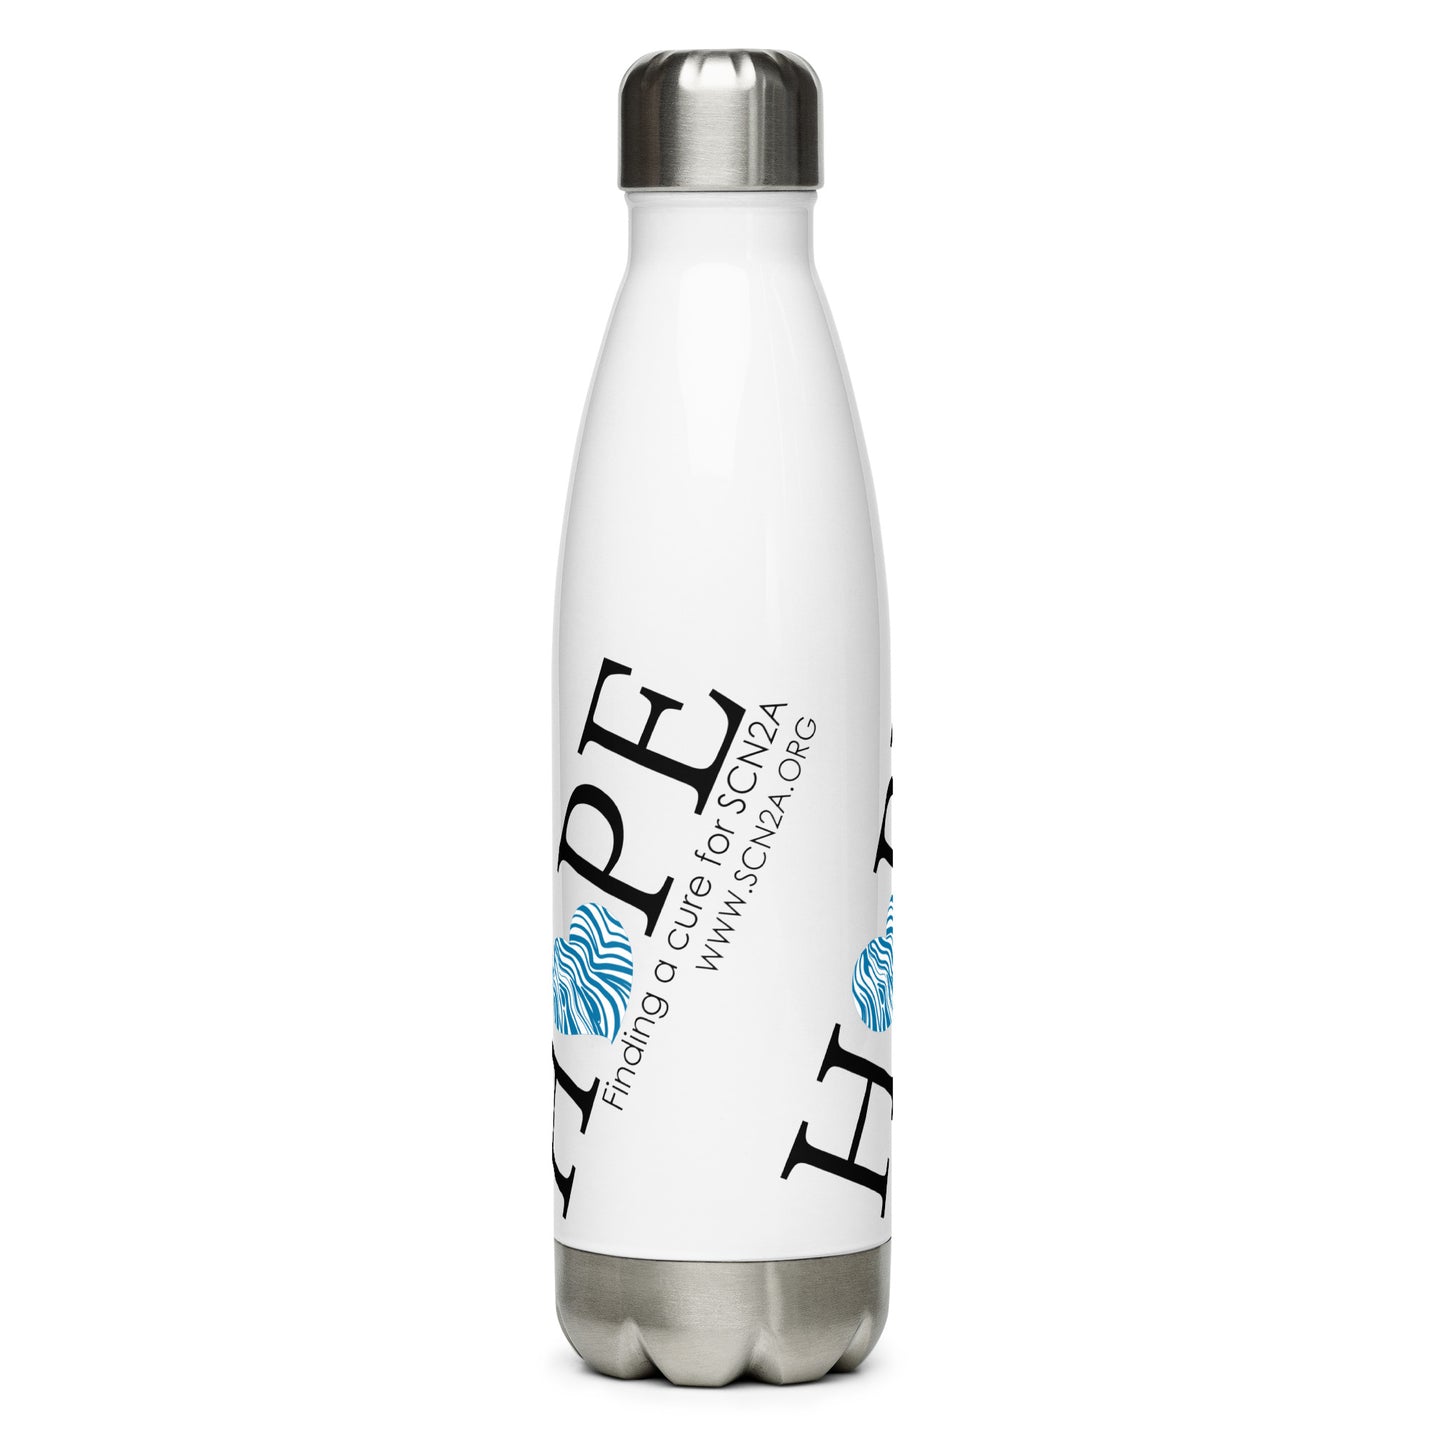 HOPE w/ blue heart Stainless steel water bottle